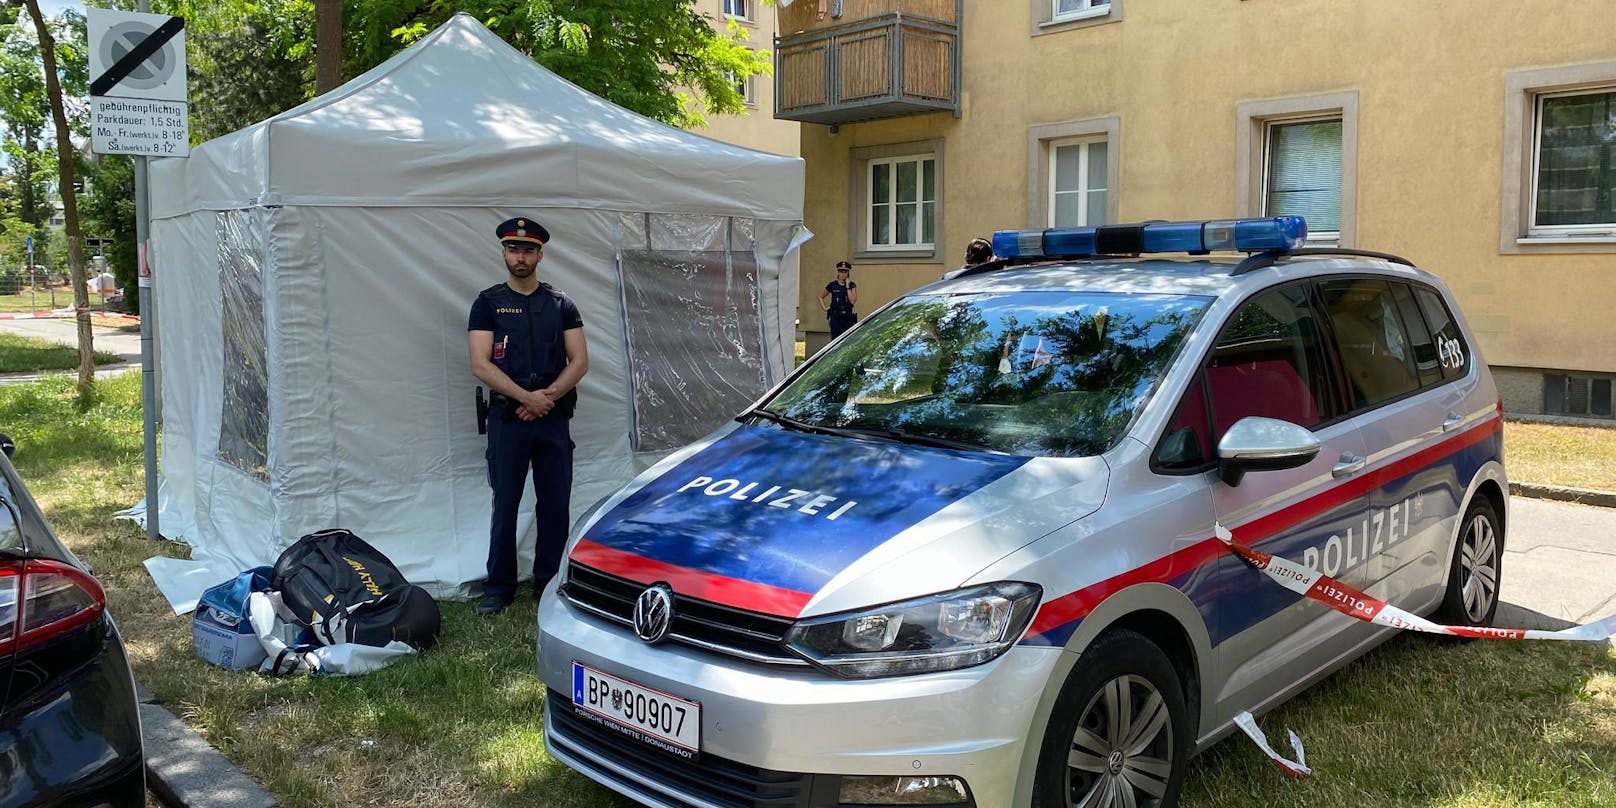 In der Wiener Donaustadt wurde am Samstagmorgen (26.06.2021) eine leblose weibliche Person gefunden. Eine Reanimation blieb erfolglos. Die Polizei untersucht die Hintergründe.